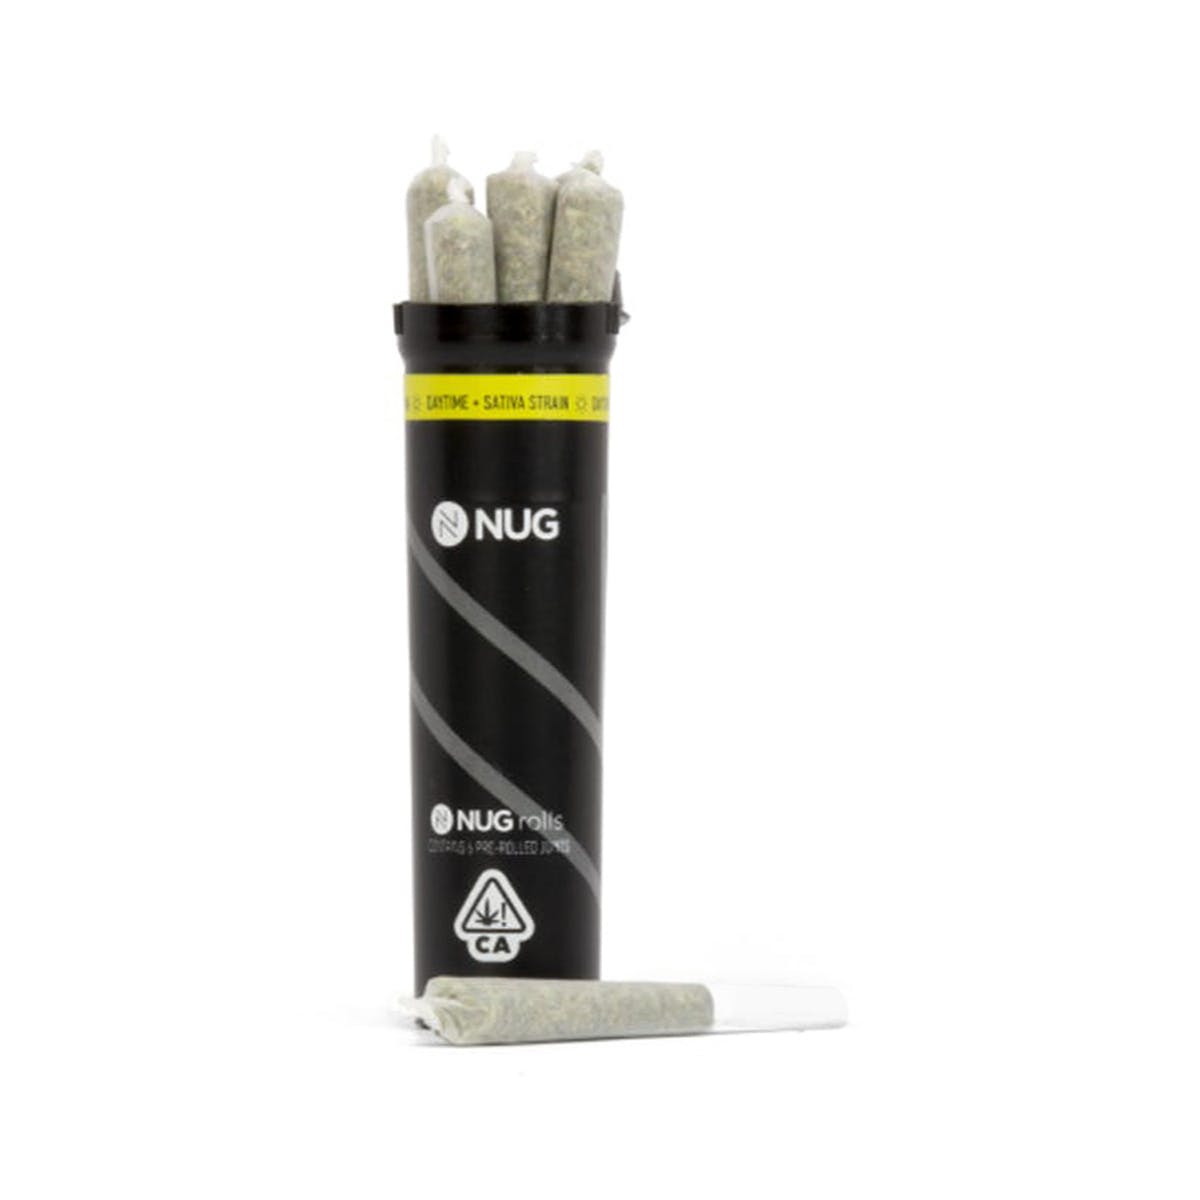 marijuana-dispensaries-pure-710sf-in-san-francisco-nug-rolls-premium-jack-6pk